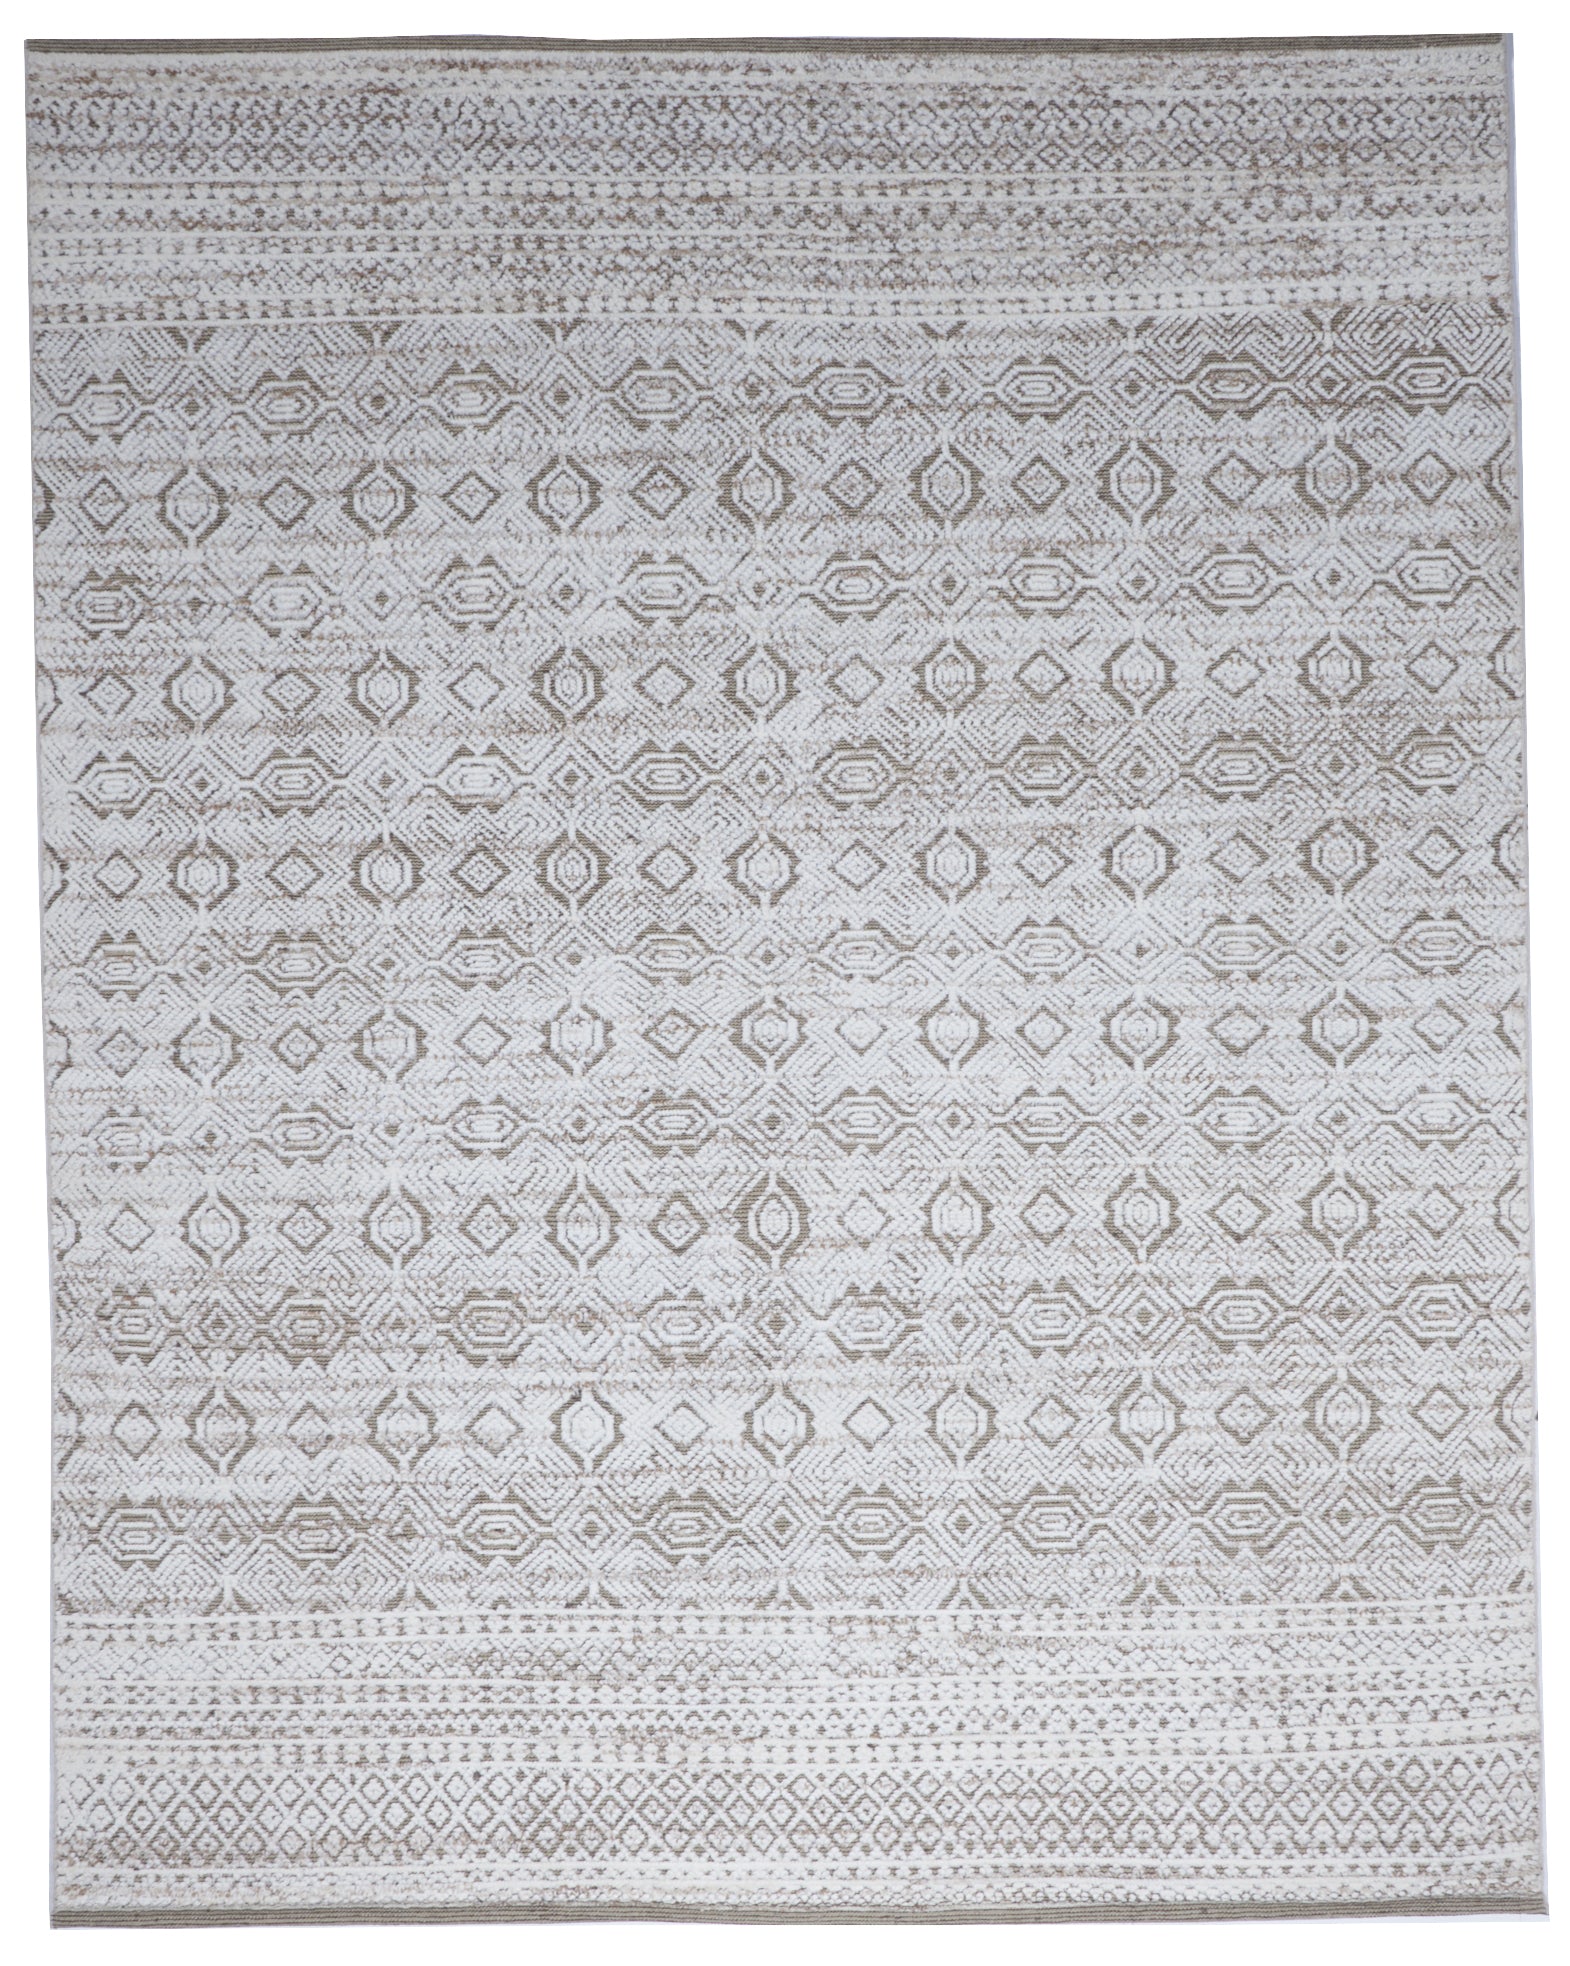 Moroccan Handmade Brown Gray Wool Rug 8' x 10' - IGotYourRug